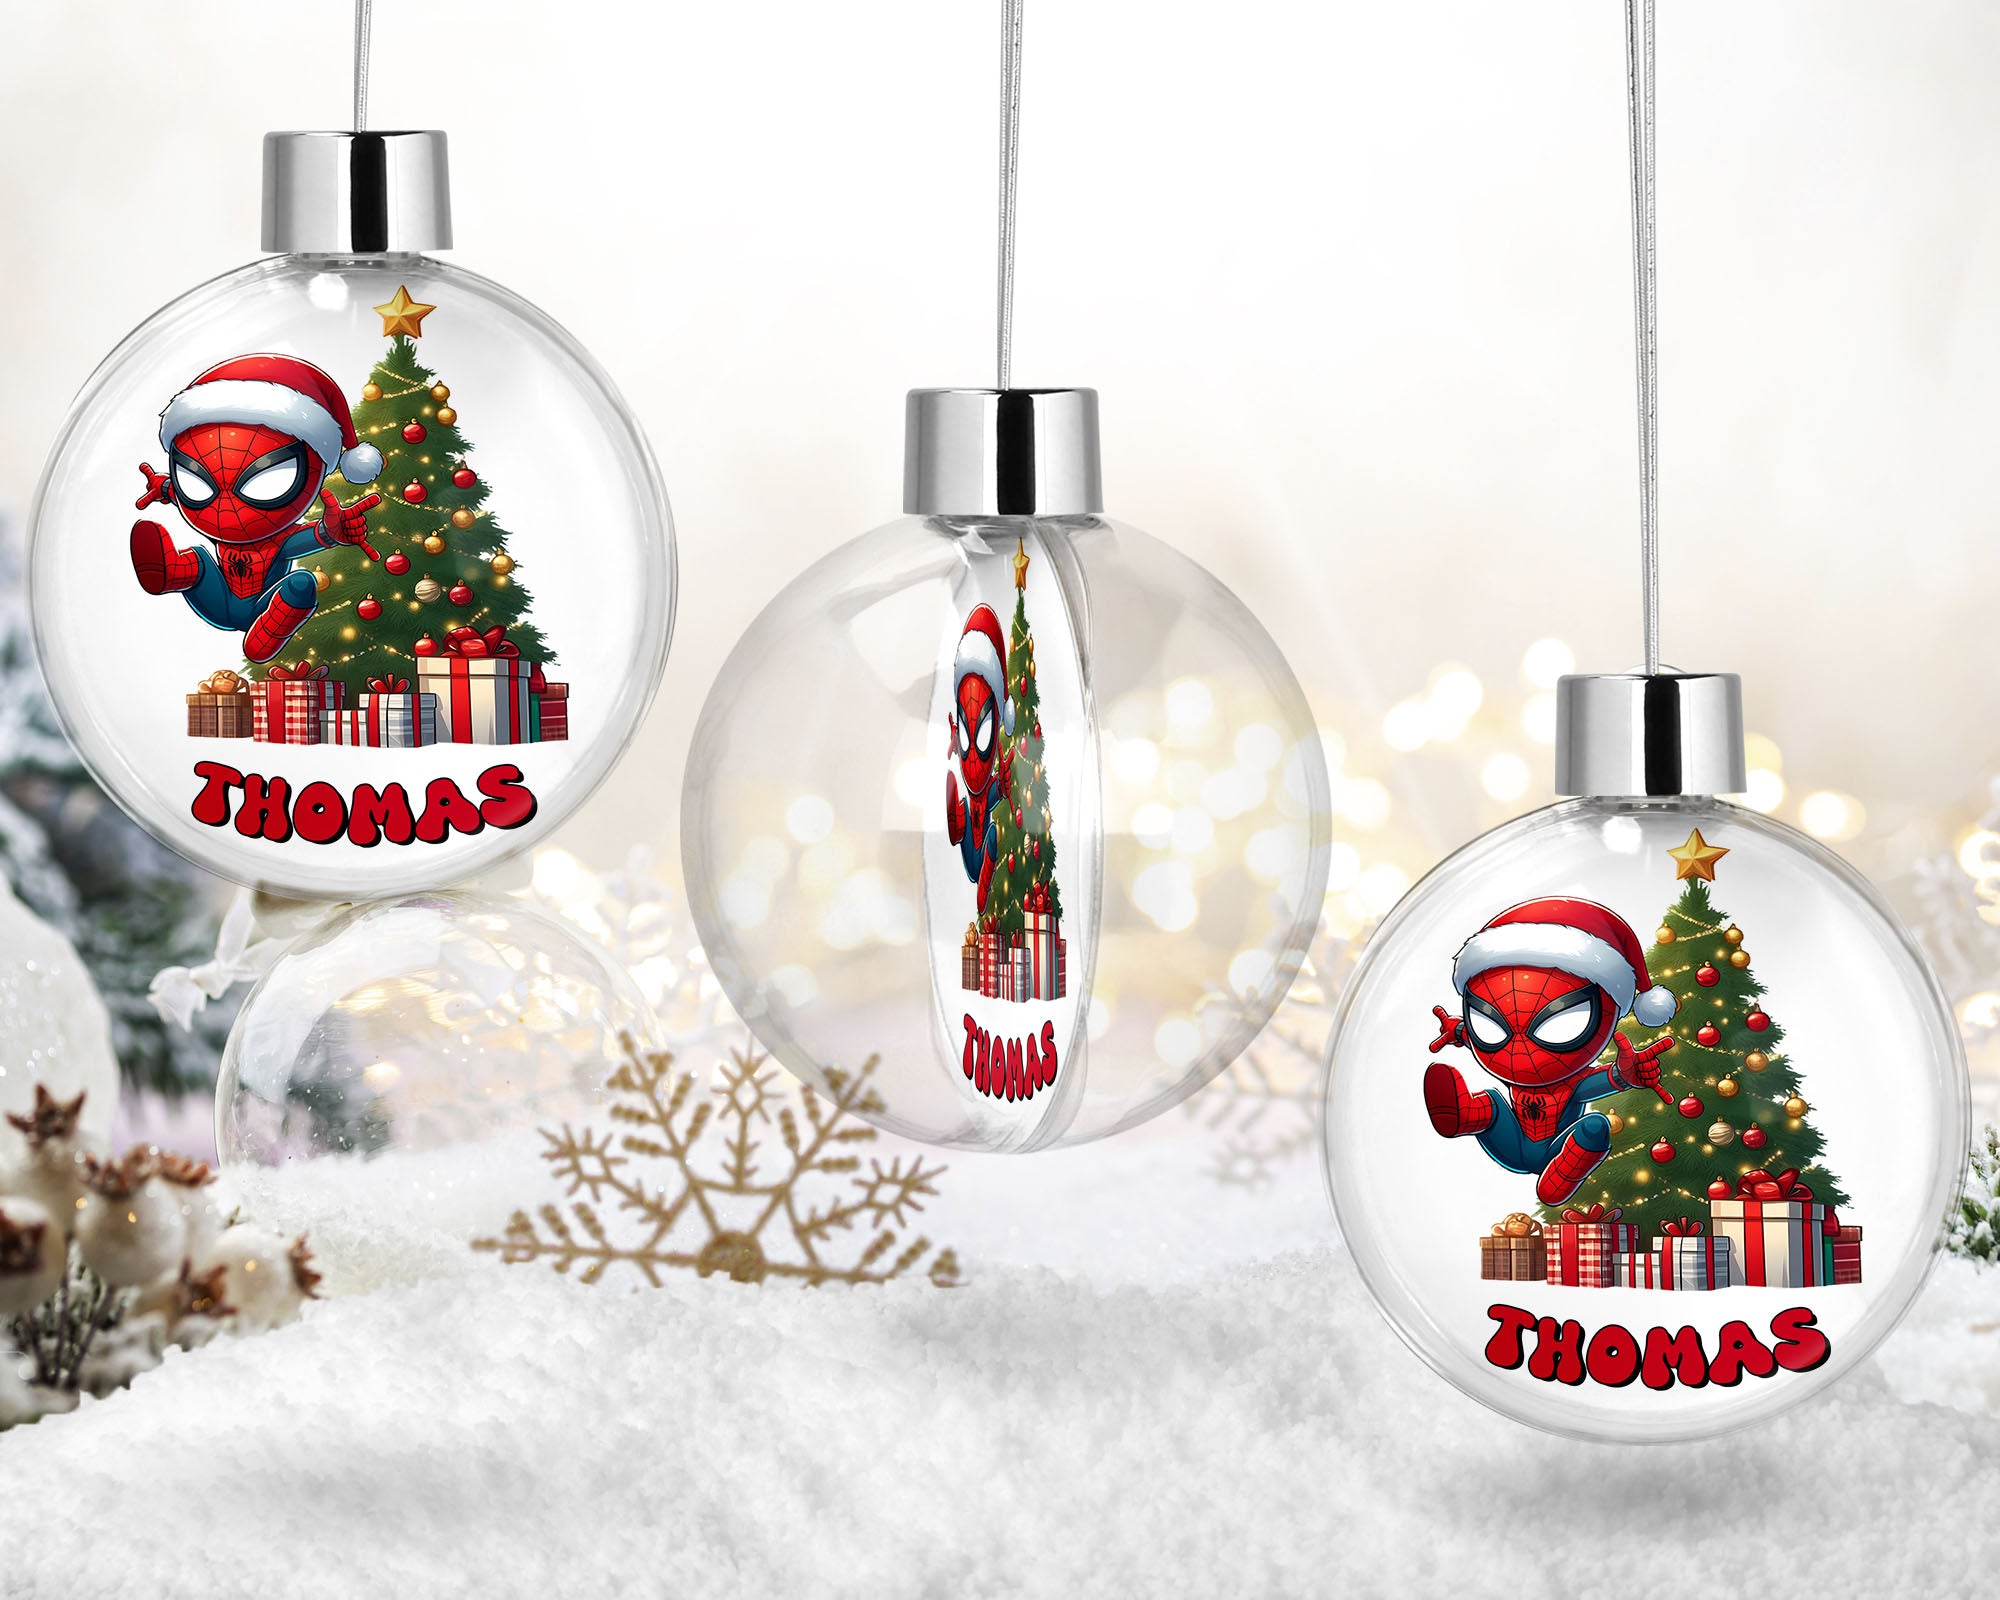 Décoration de Noël Personnalisable - Boule Spiderman avec Prénom